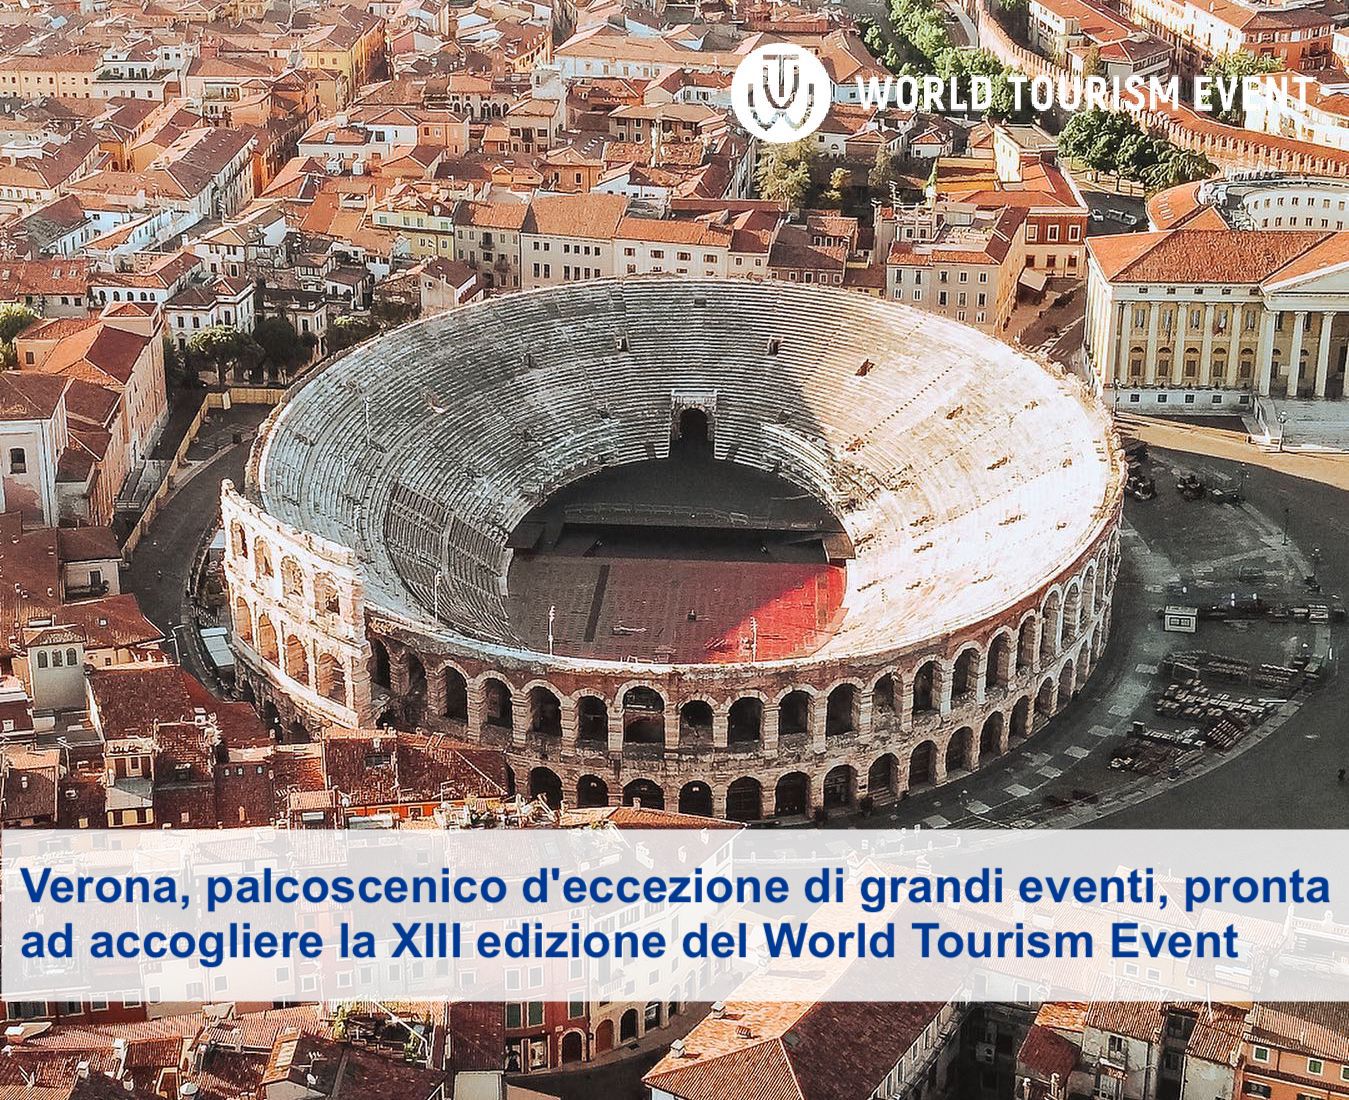 Verona, palcoscenico d’eccezione di grandi eventi, pronta ad accogliere la XIII edizione del World Tourism Event